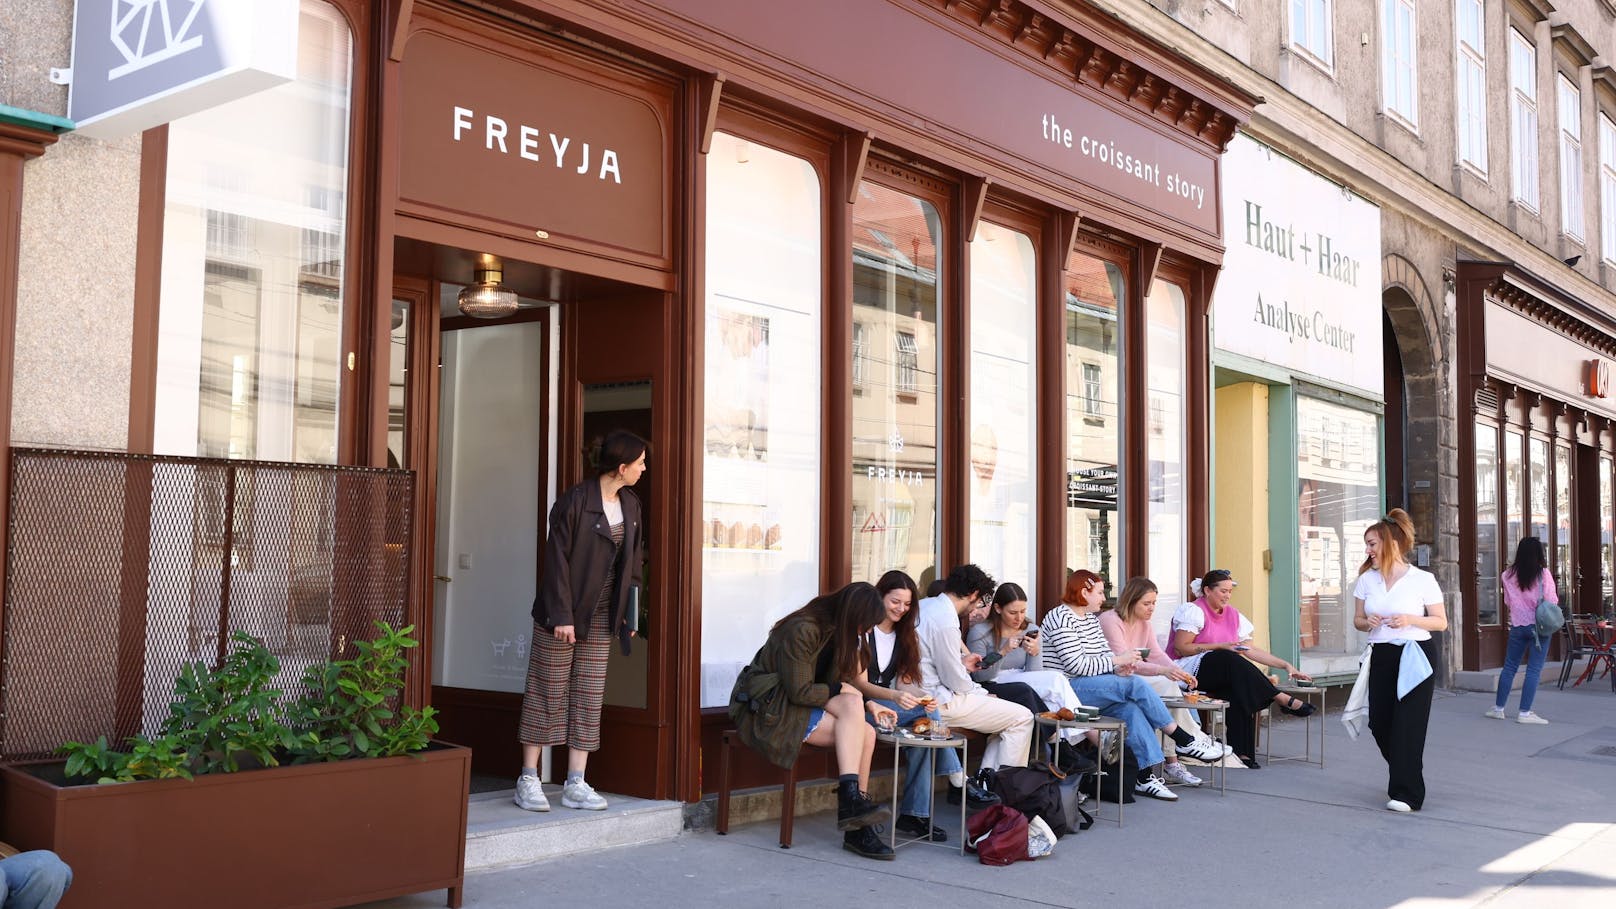 Hier, in der Alser Straße 19, hat der erste internationale Ableger der ungarischen Bäckerei Freyja eröffnet.